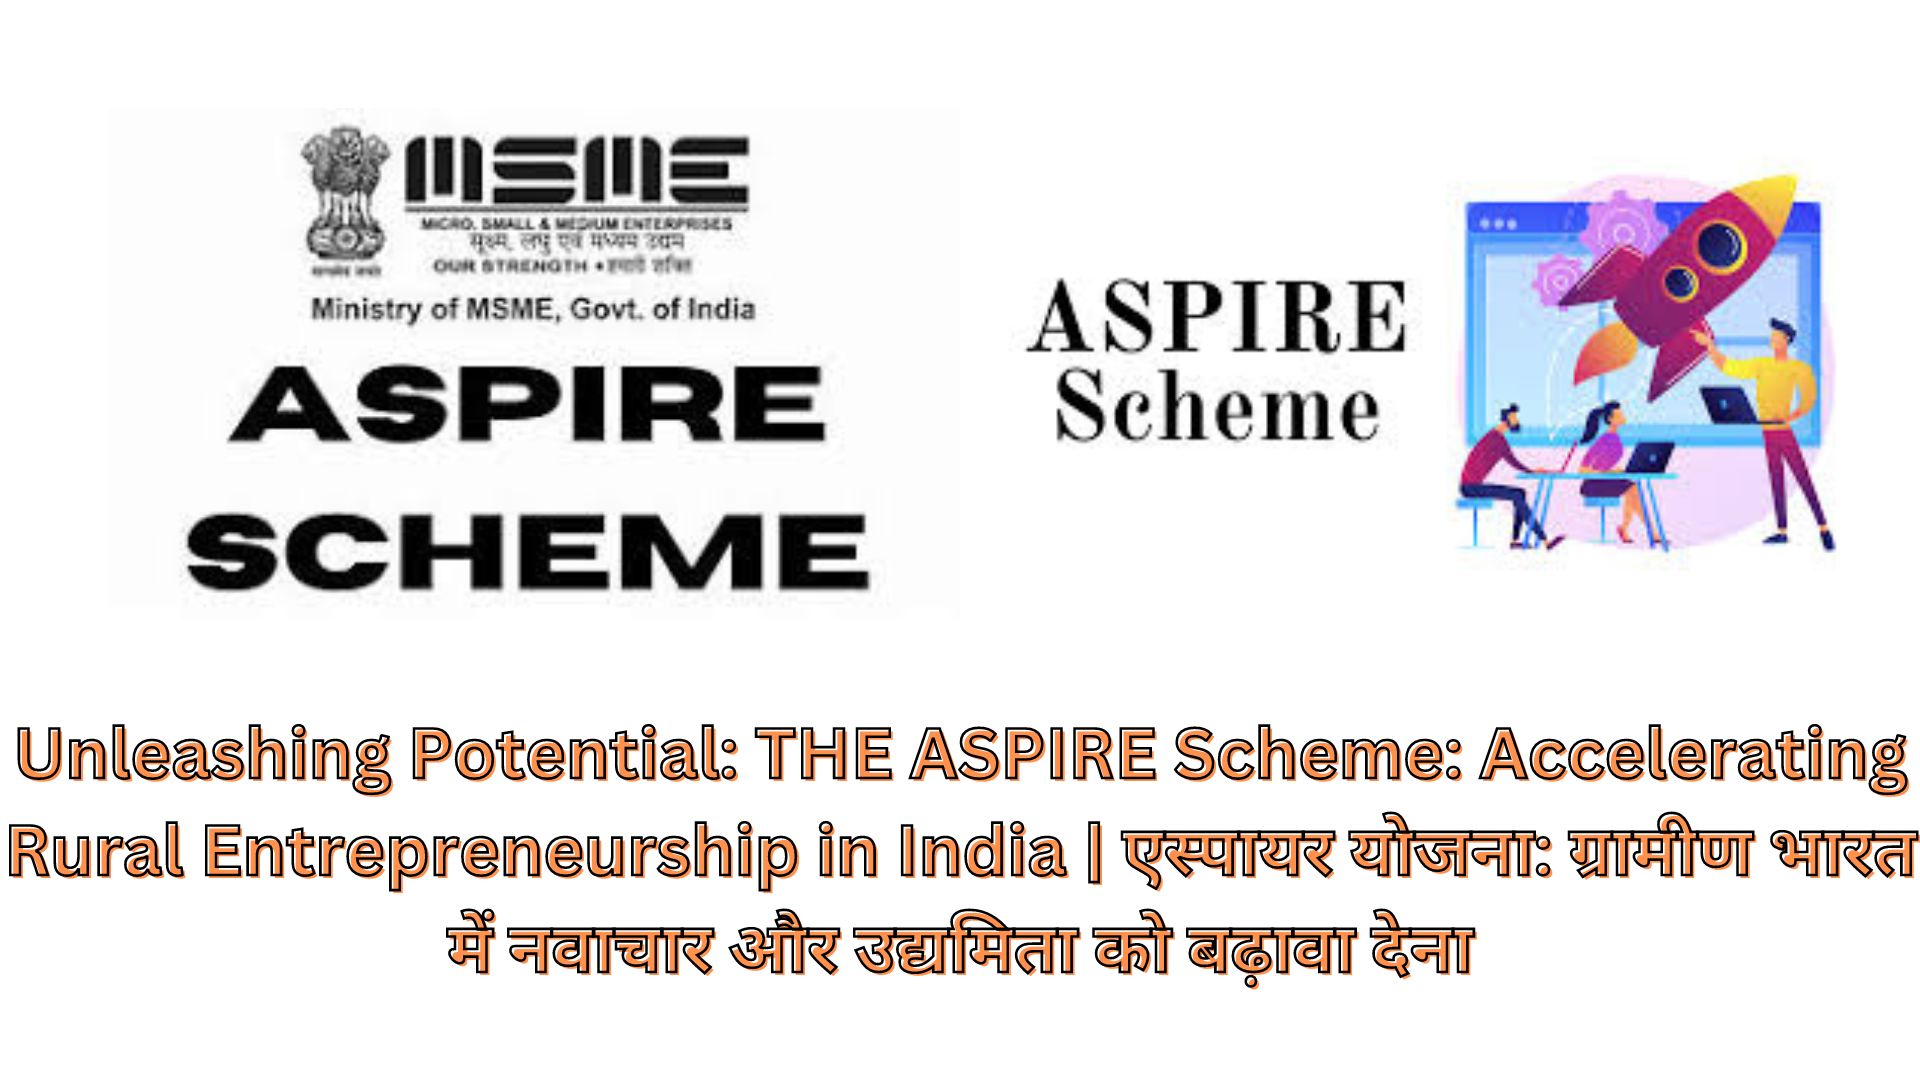 Unleashing Potential: THE ASPIRE Scheme: Accelerating Rural Entrepreneurship in India | एस्पायर योजना: ग्रामीण भारत में नवाचार और उद्यमिता को बढ़ावा देना